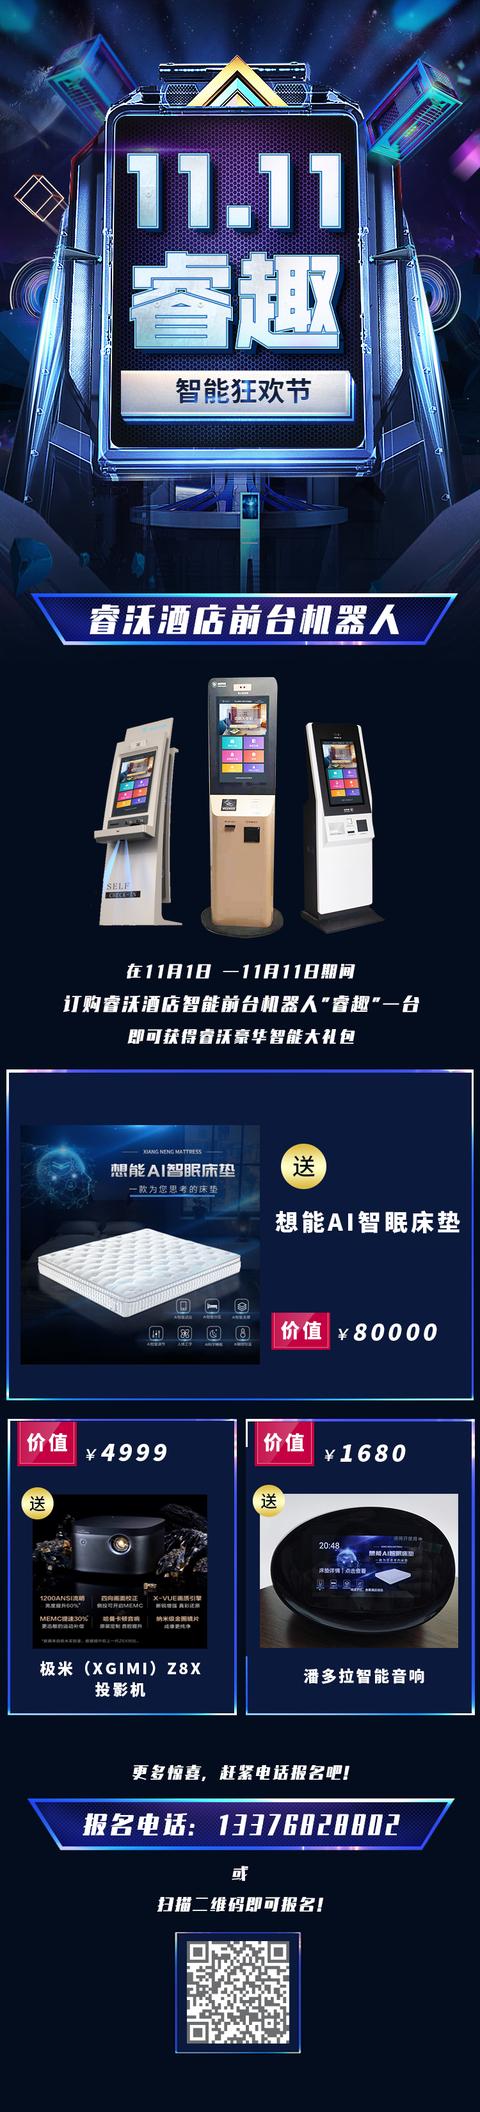 杭州一家酒店机器人公司掀起"酒店智能化变革"狂潮